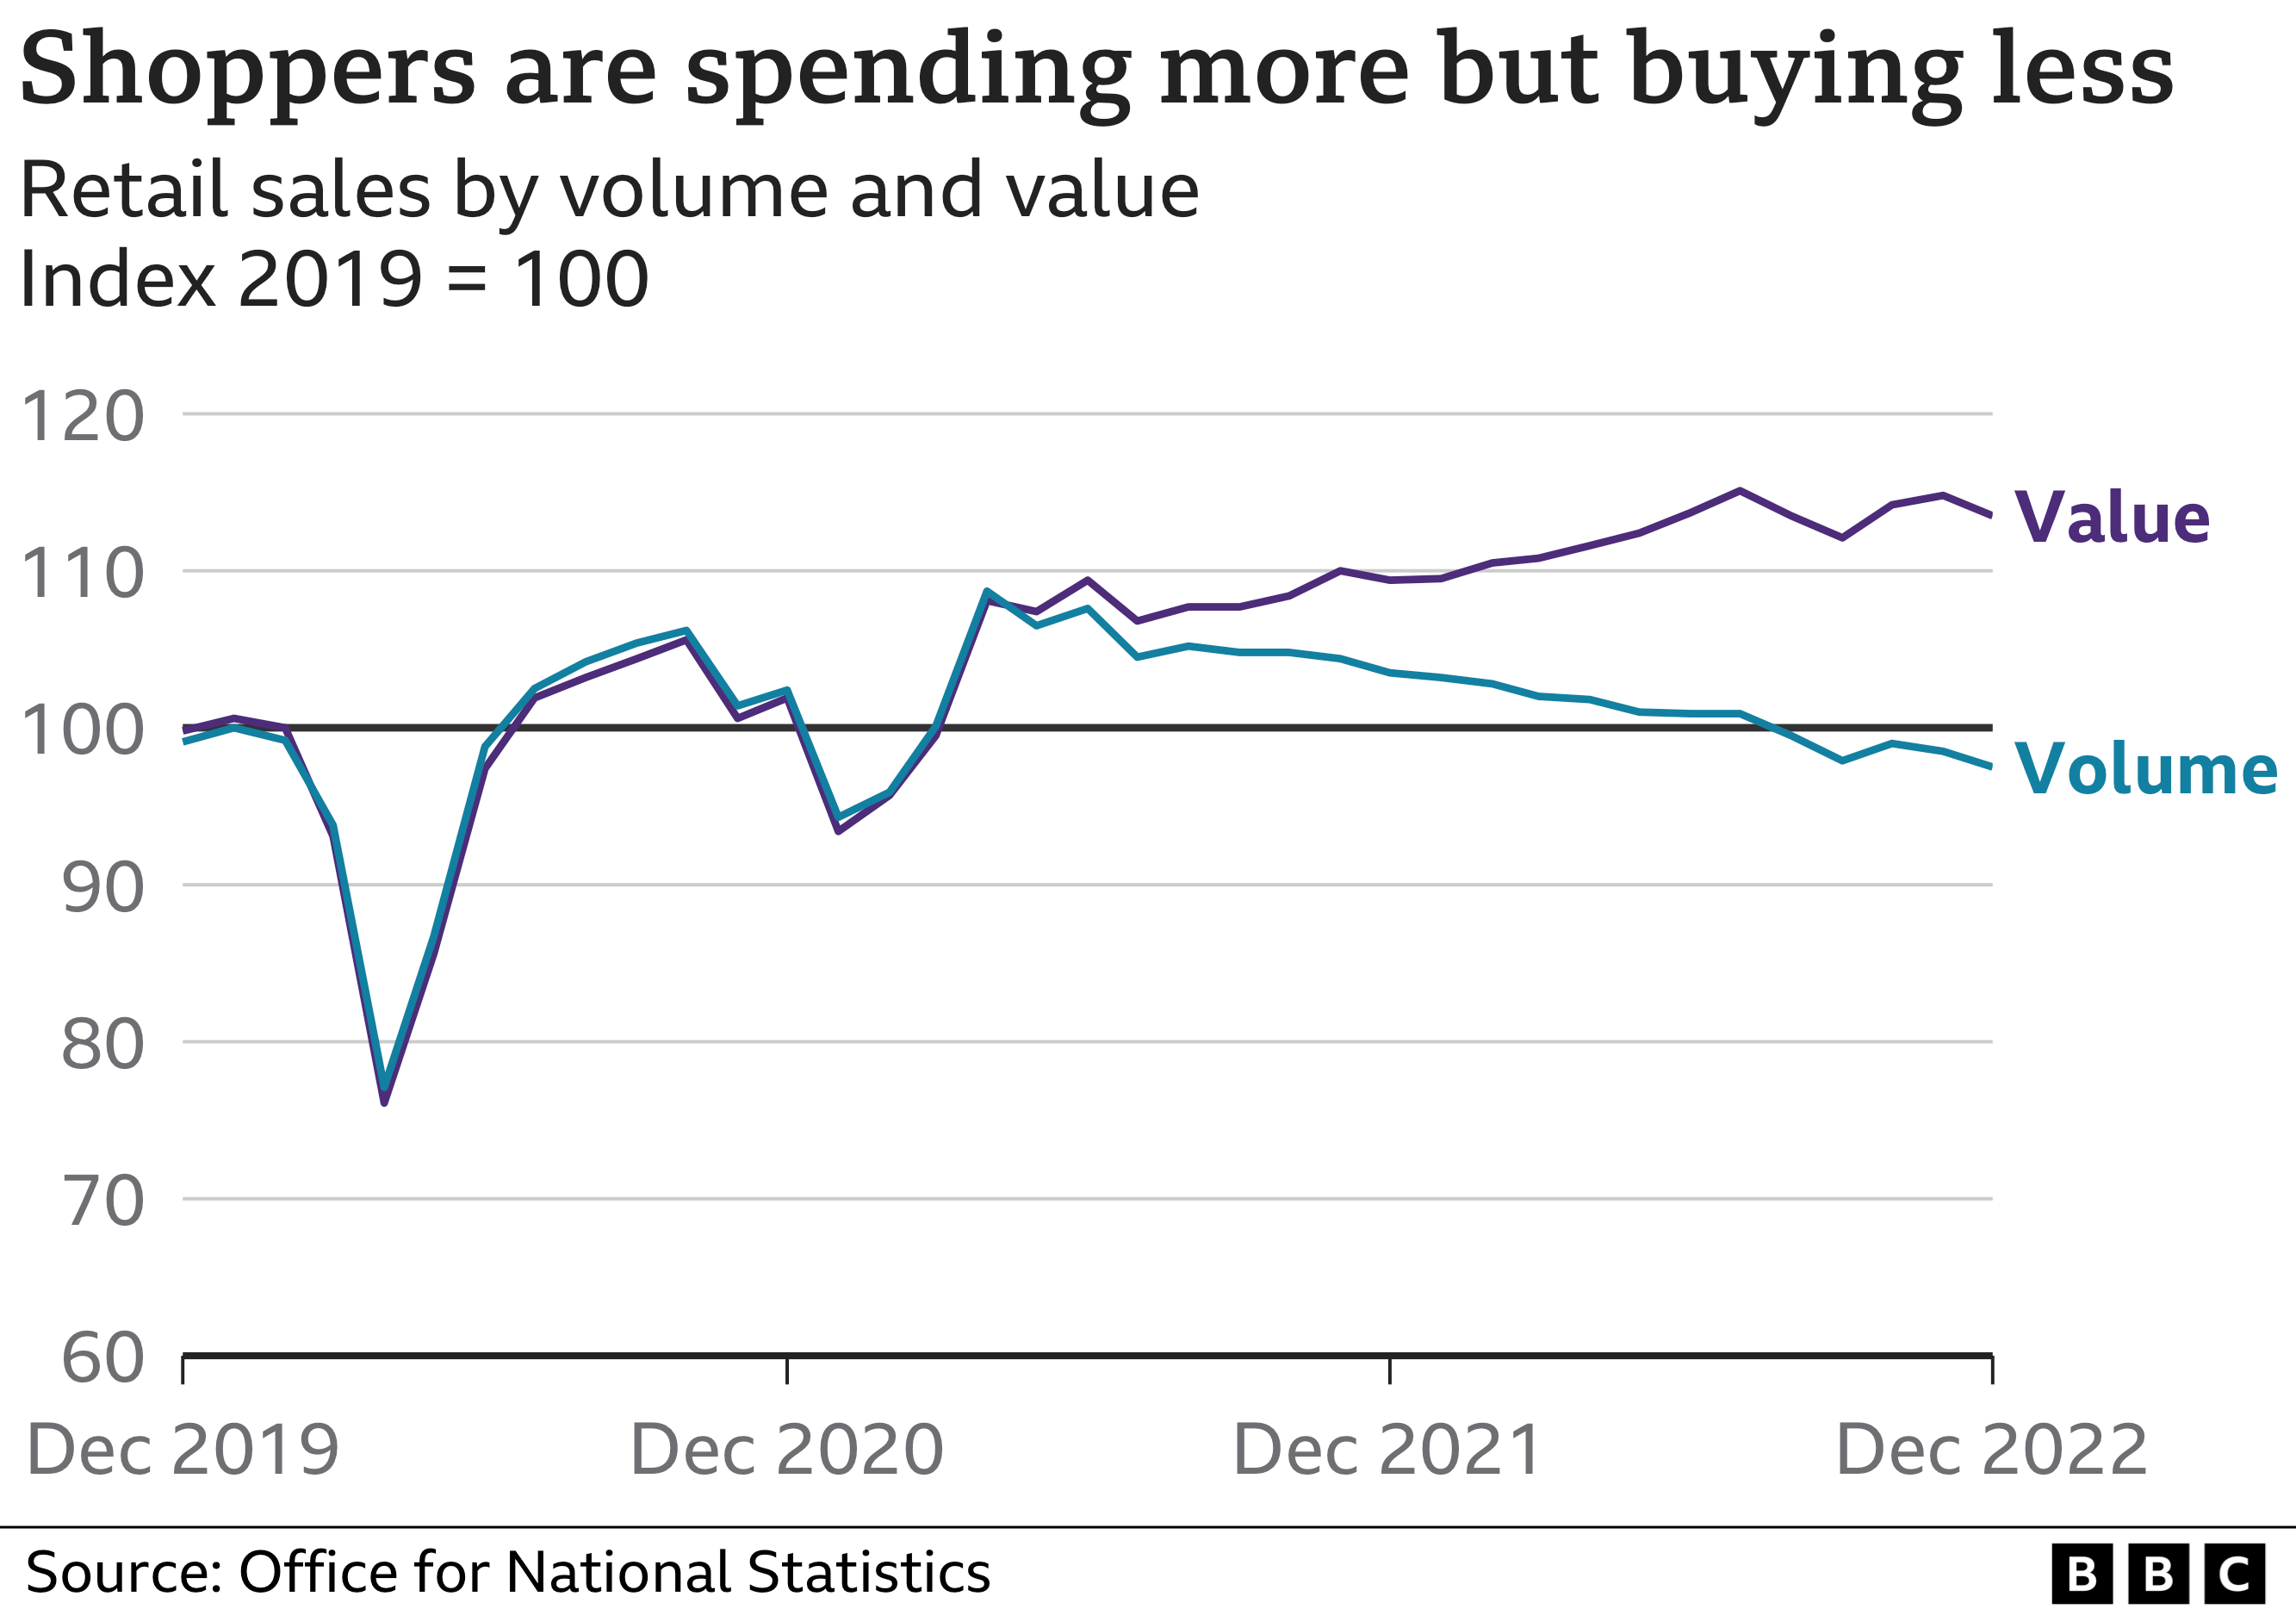 Линейная диаграмма, отслеживающая розничные продажи в Великобритании с использованием 2019 года в качестве индексного года, показывающая, что значения продаж и объемы продаж соответствовали друг другу с декабря 2019 года до начала 2021 года, но с тех пор значения продаж растут, а объемы падают. предполагает, что покупатели тратят больше, но покупают меньше.